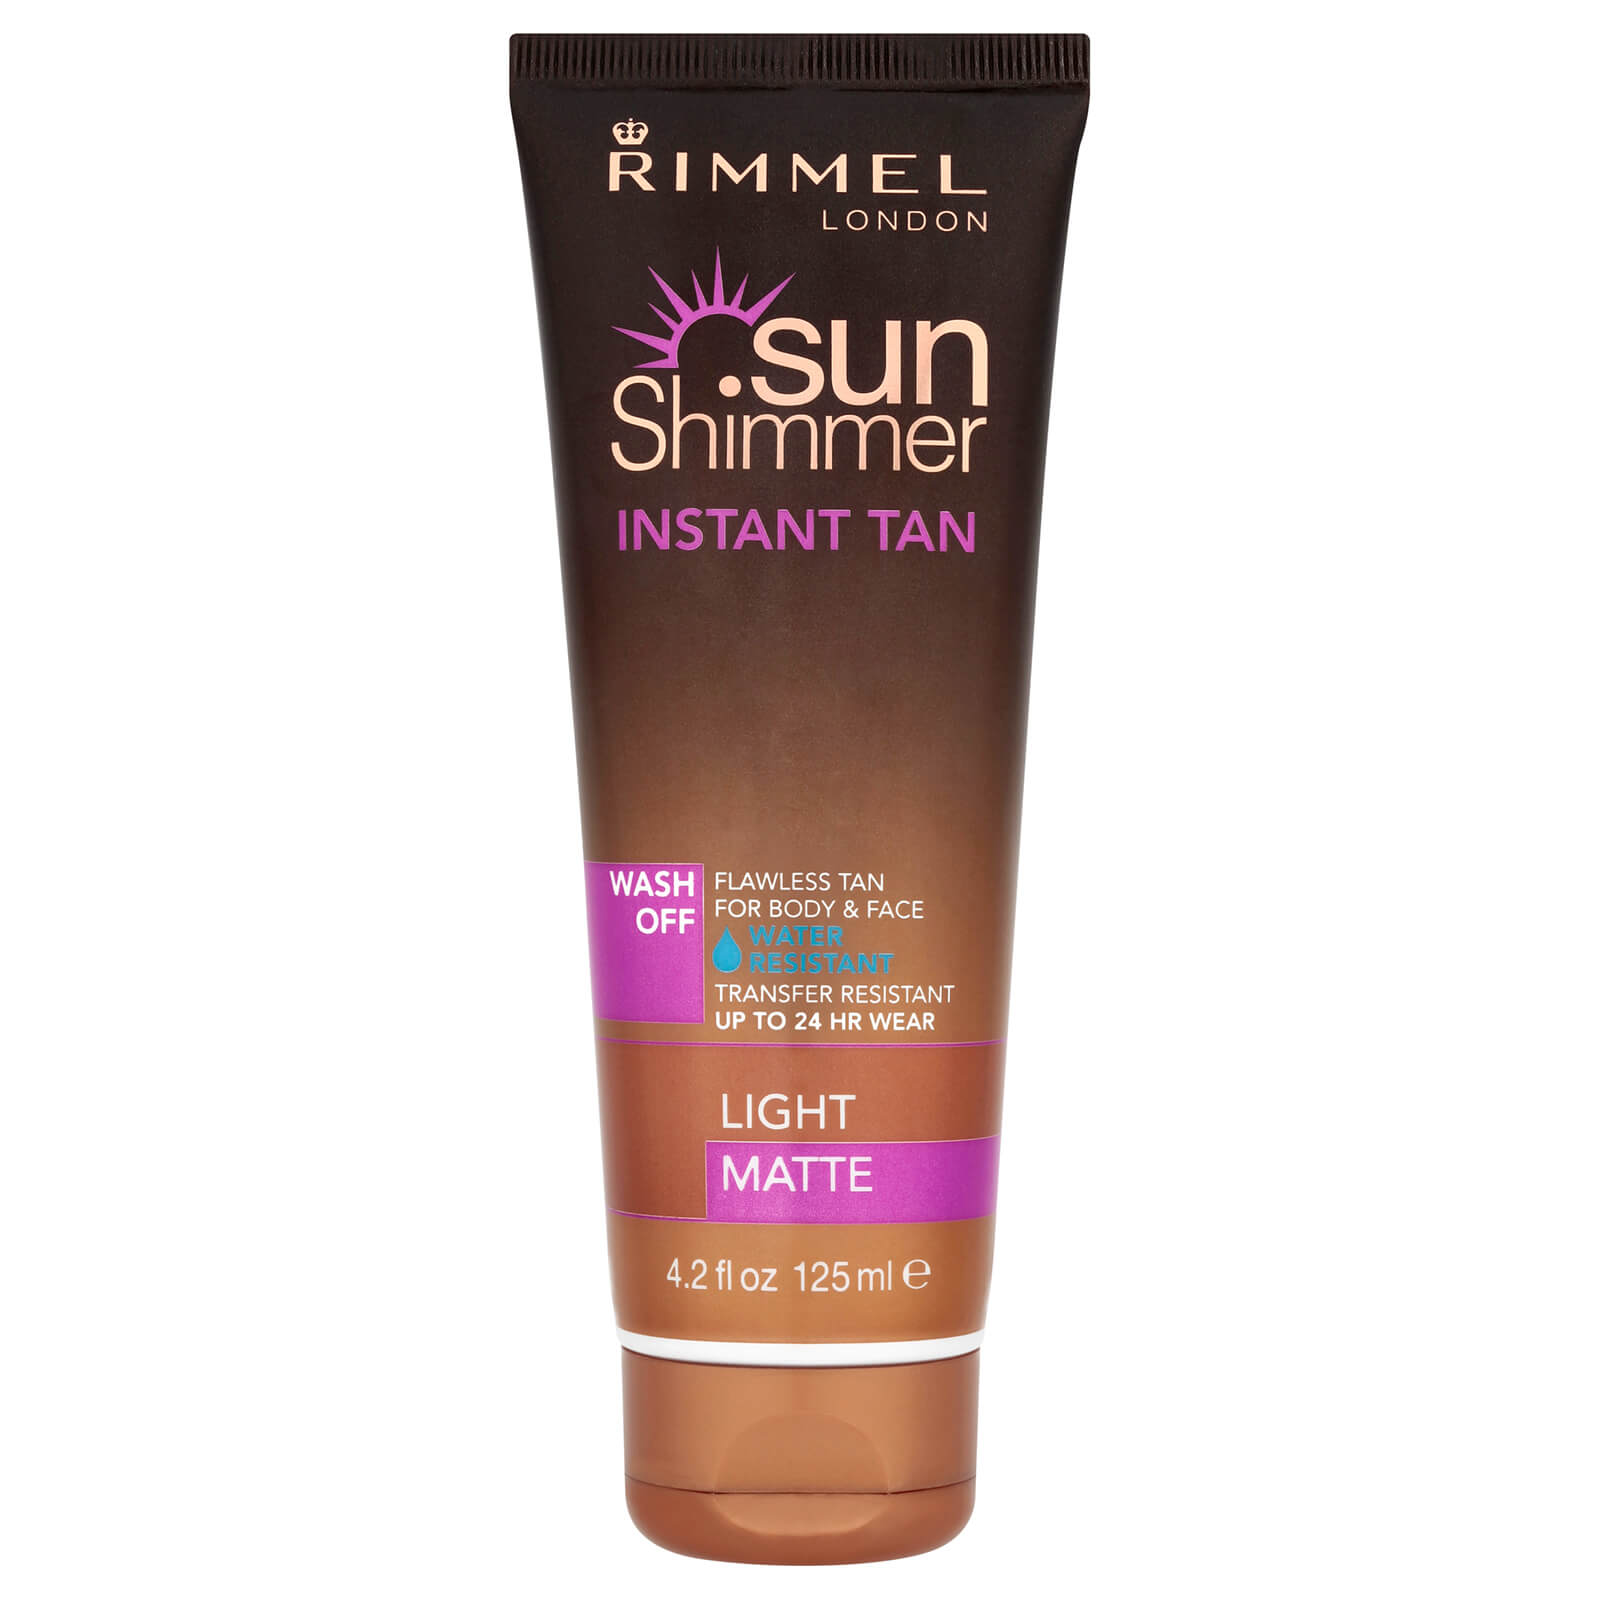 Rimmel Sunshimmer Water Resistant Wash Off Instant Tan - Matte (125ml) - 2 Light Matte